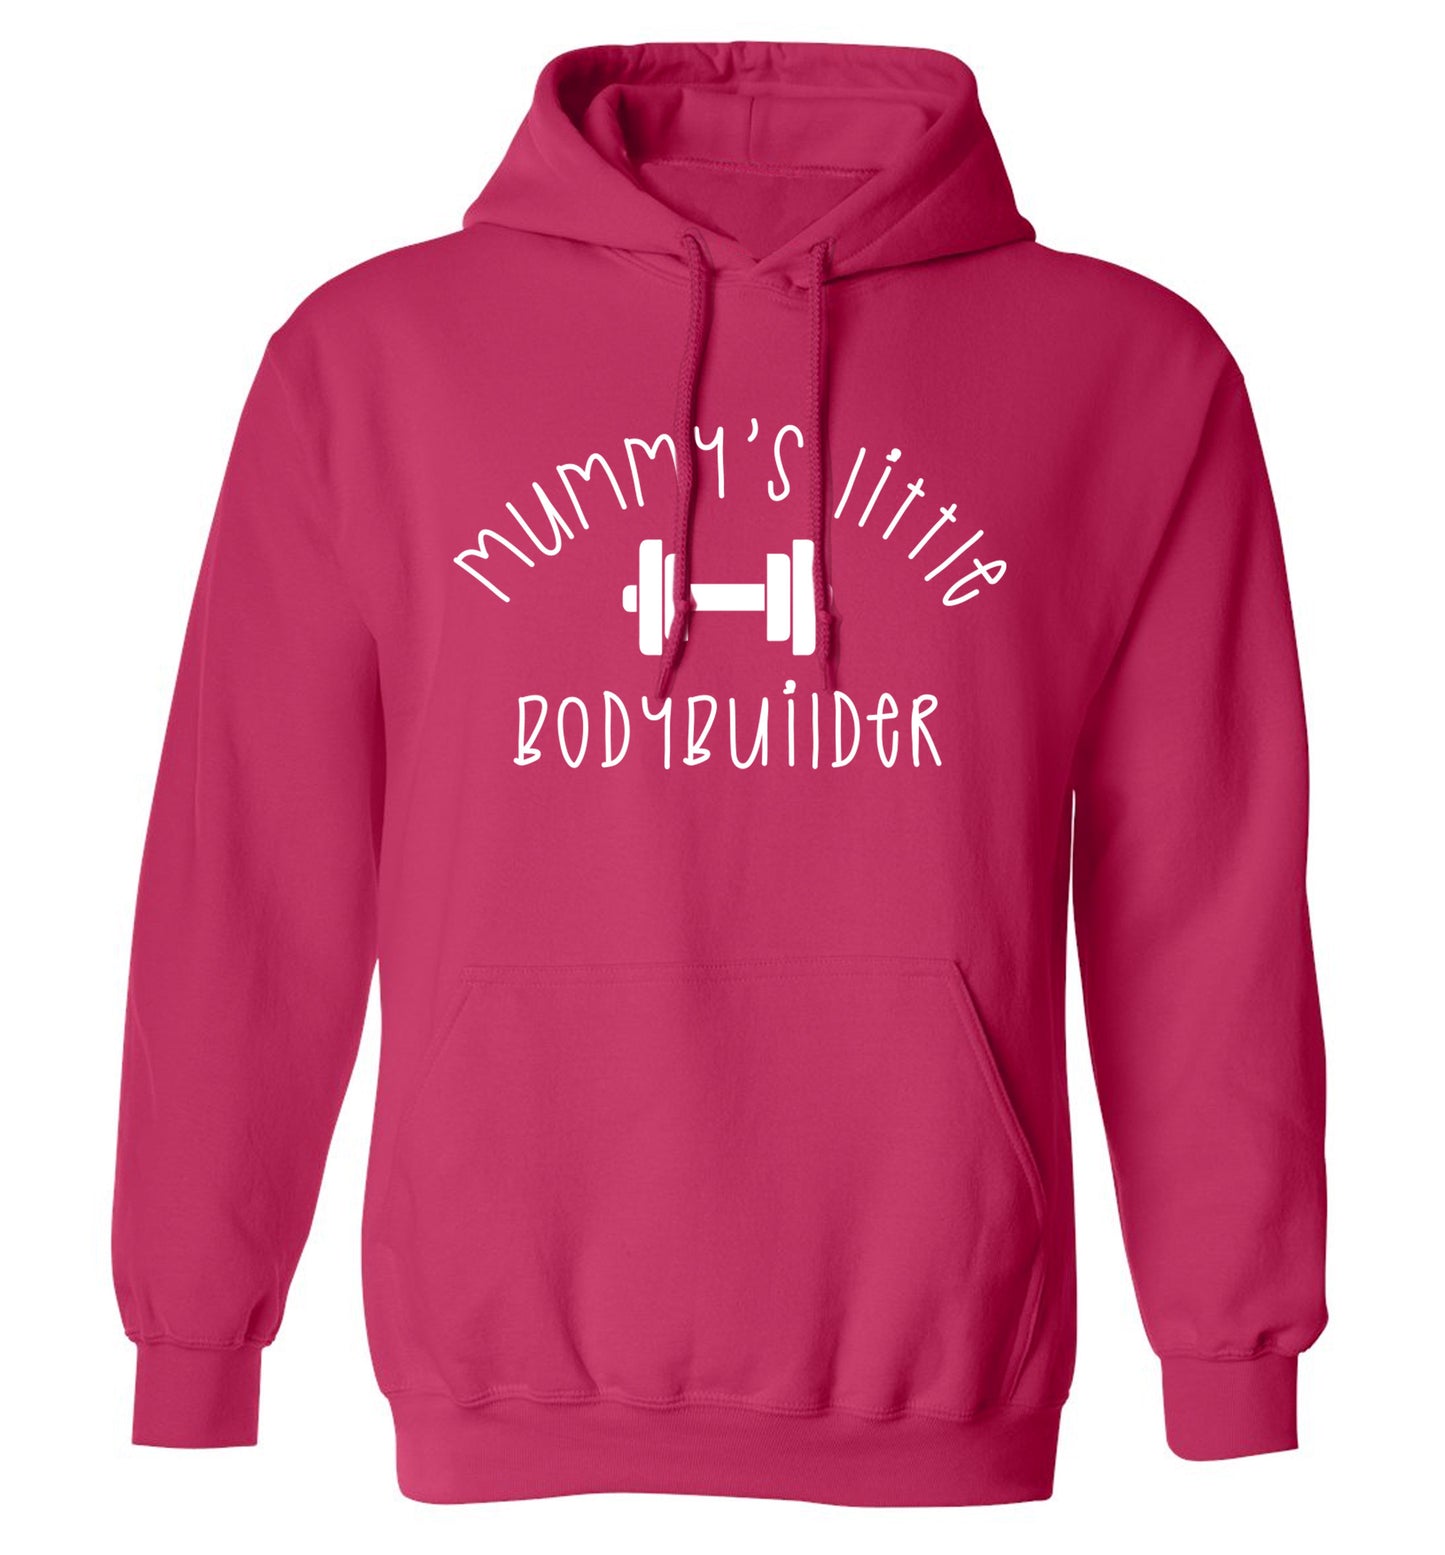 Mummy's little bodybuilder adults unisex pink hoodie 2XL